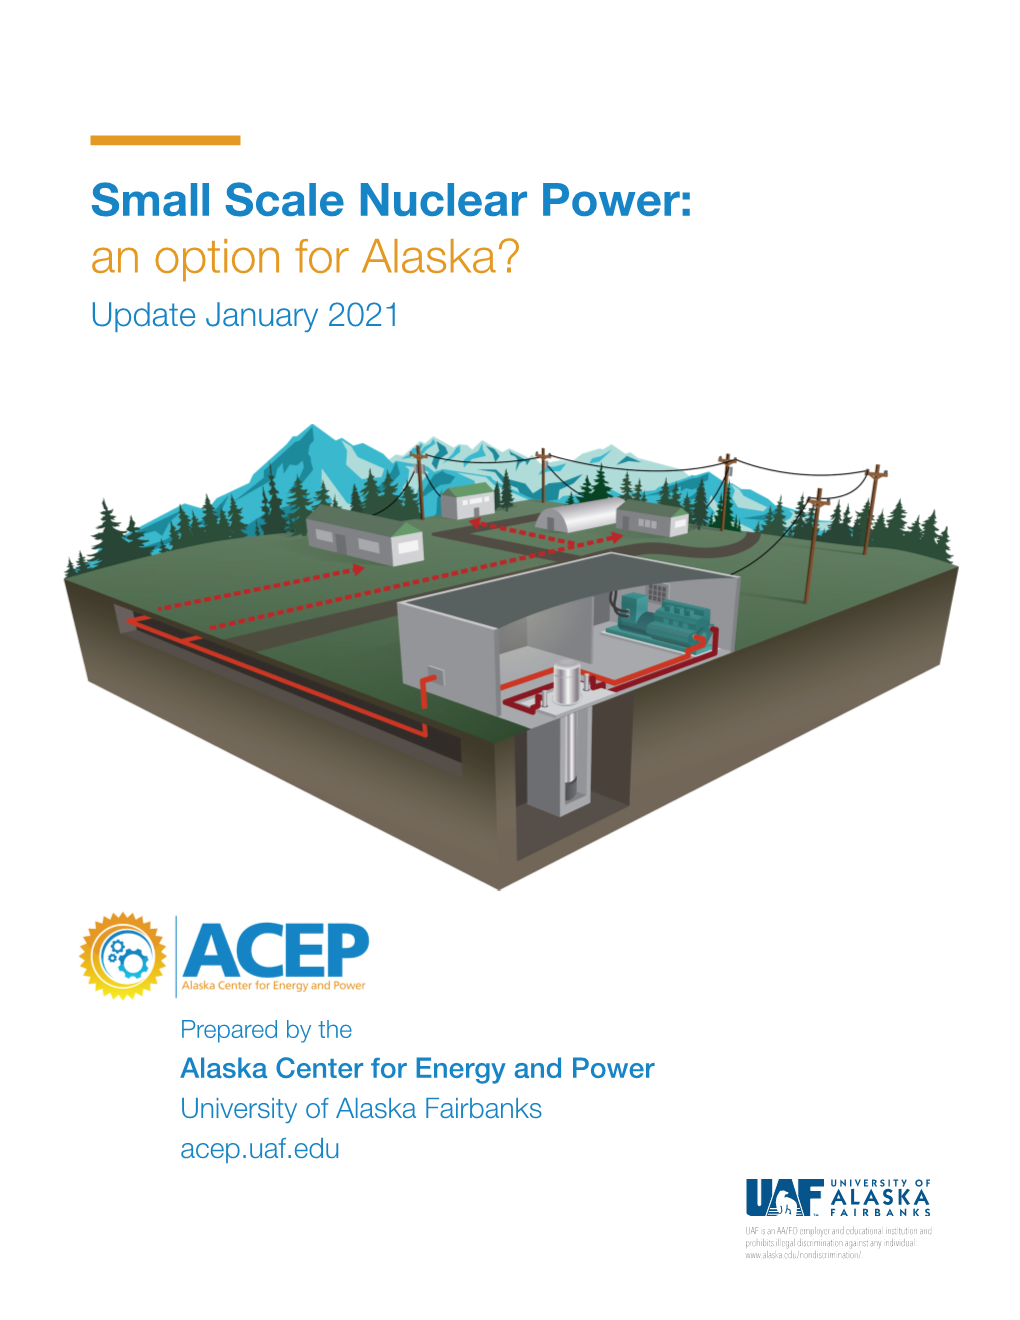 Small Scale Modular Nuclear Power: an Option for Alaska? Jan